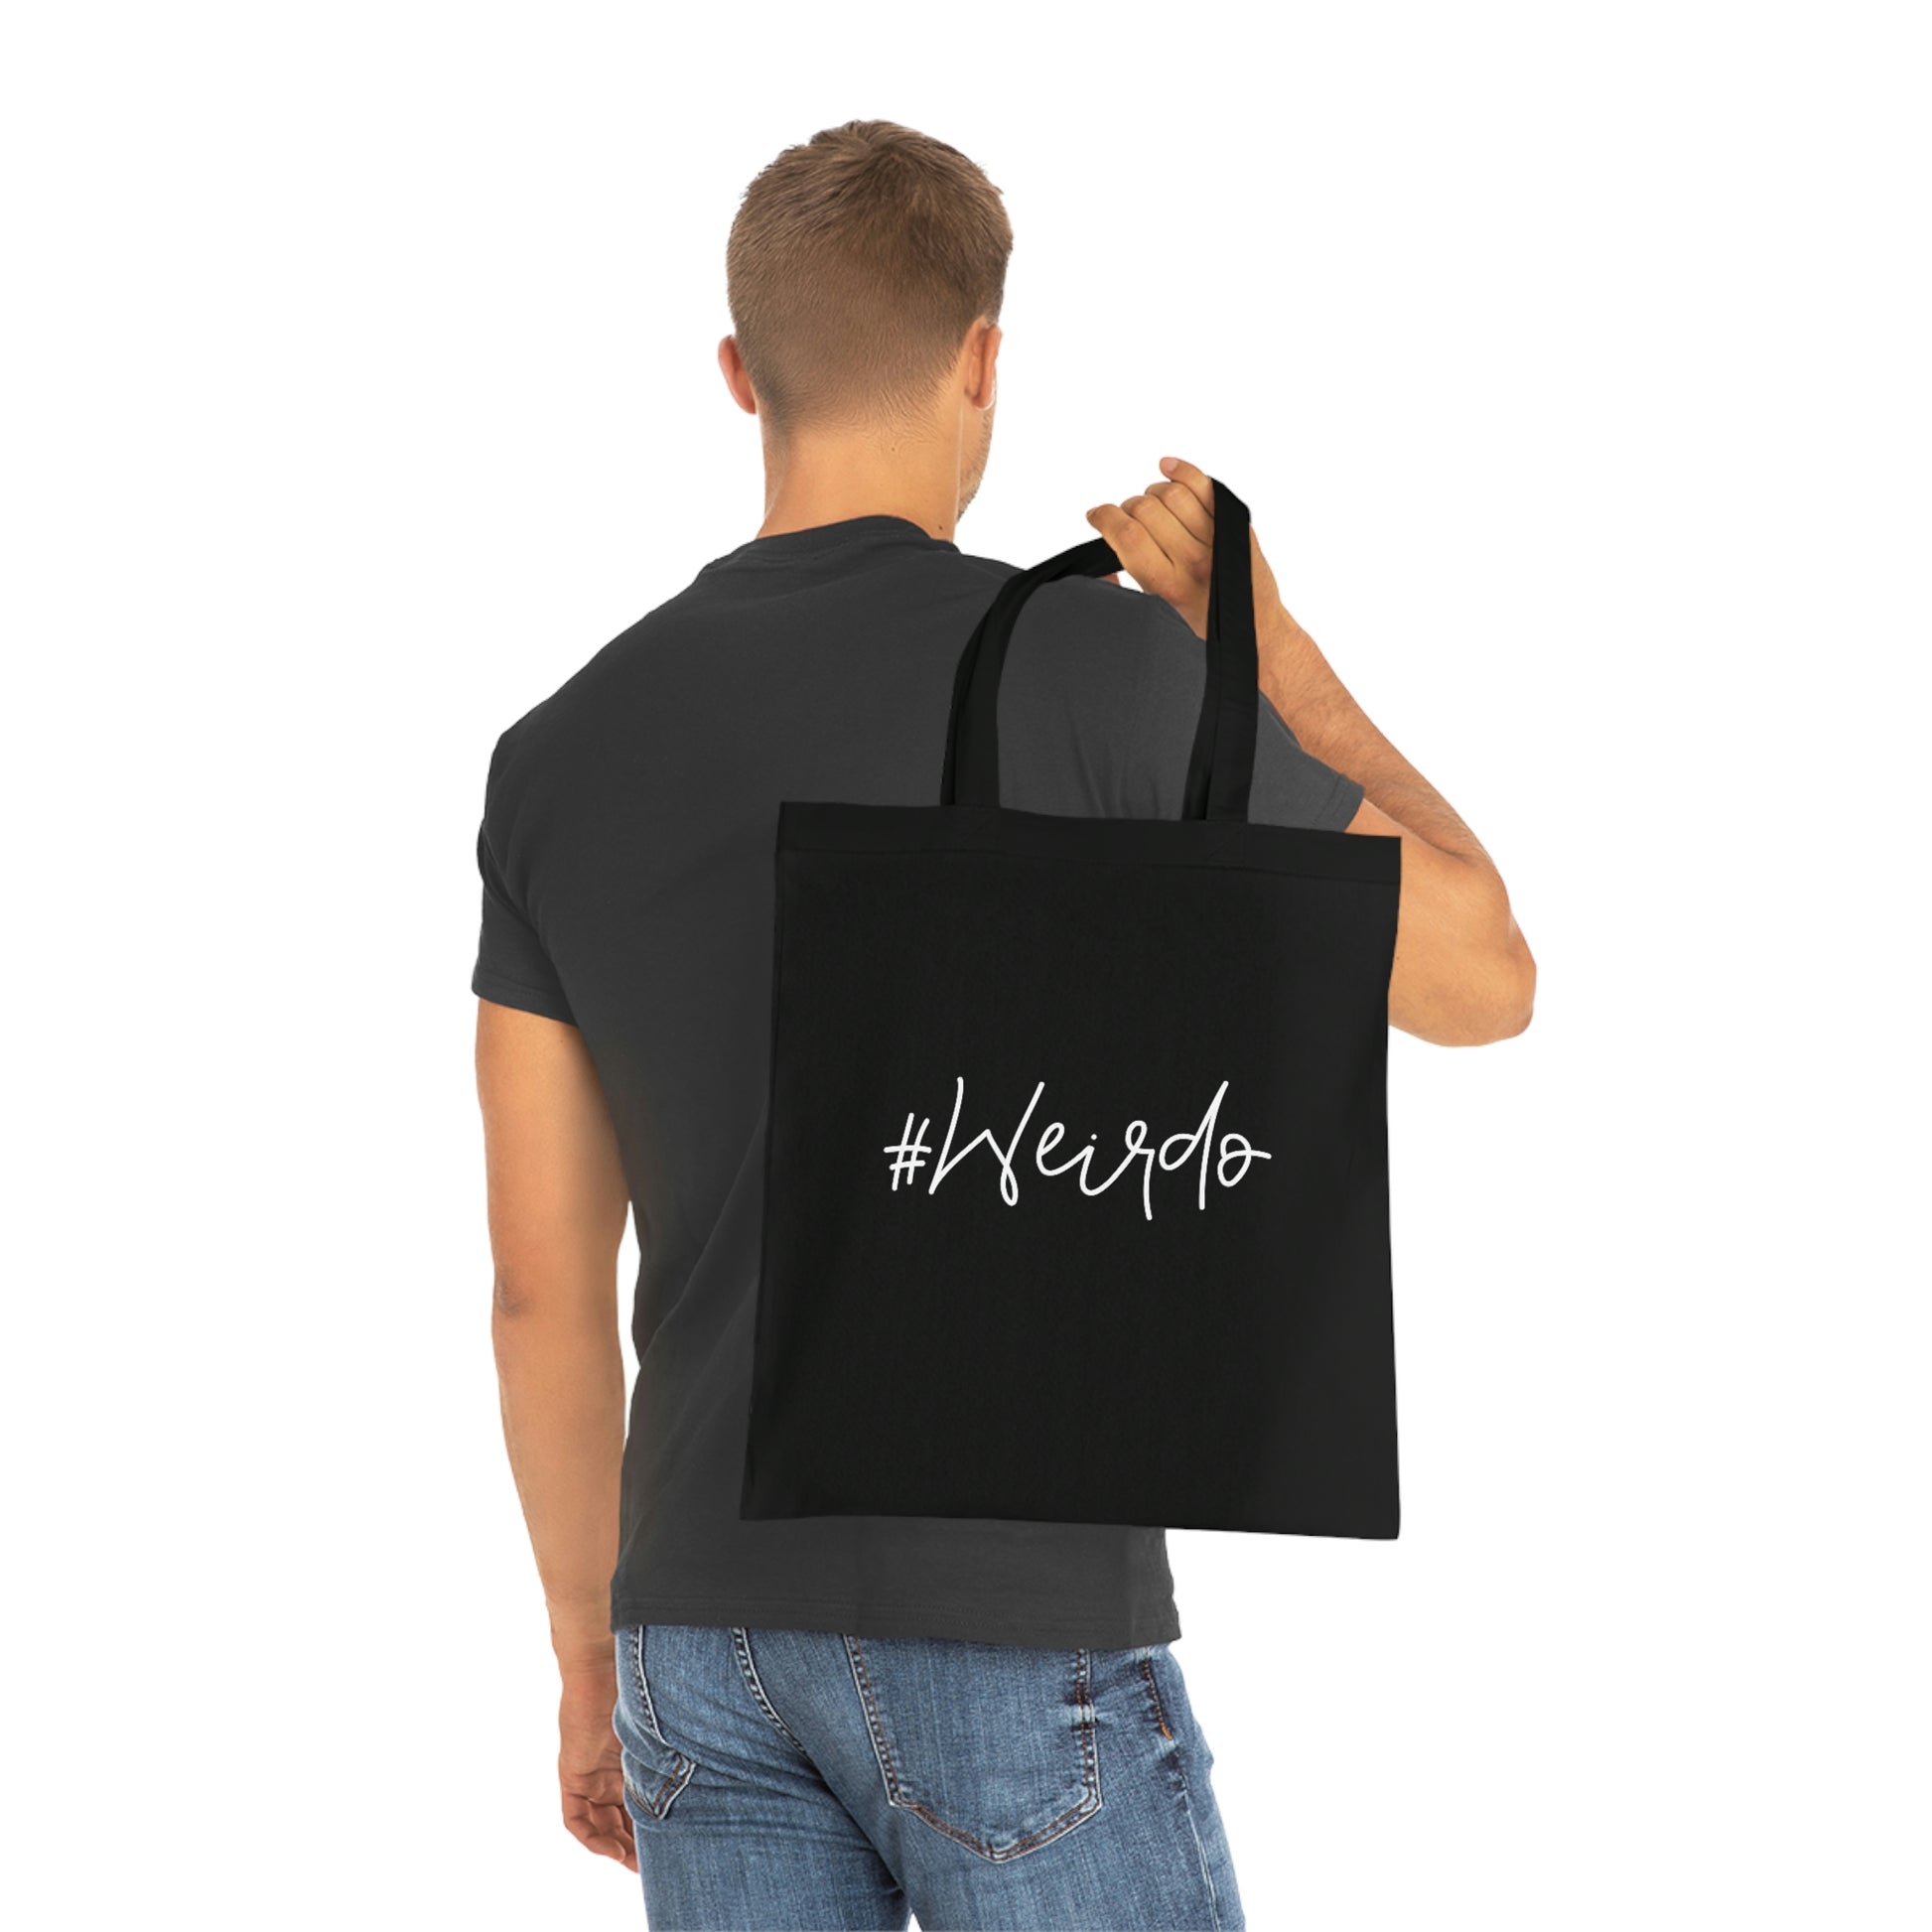  Weirdo | Basic tote bag. Black with white #Weirdo logo. 100% cotton.